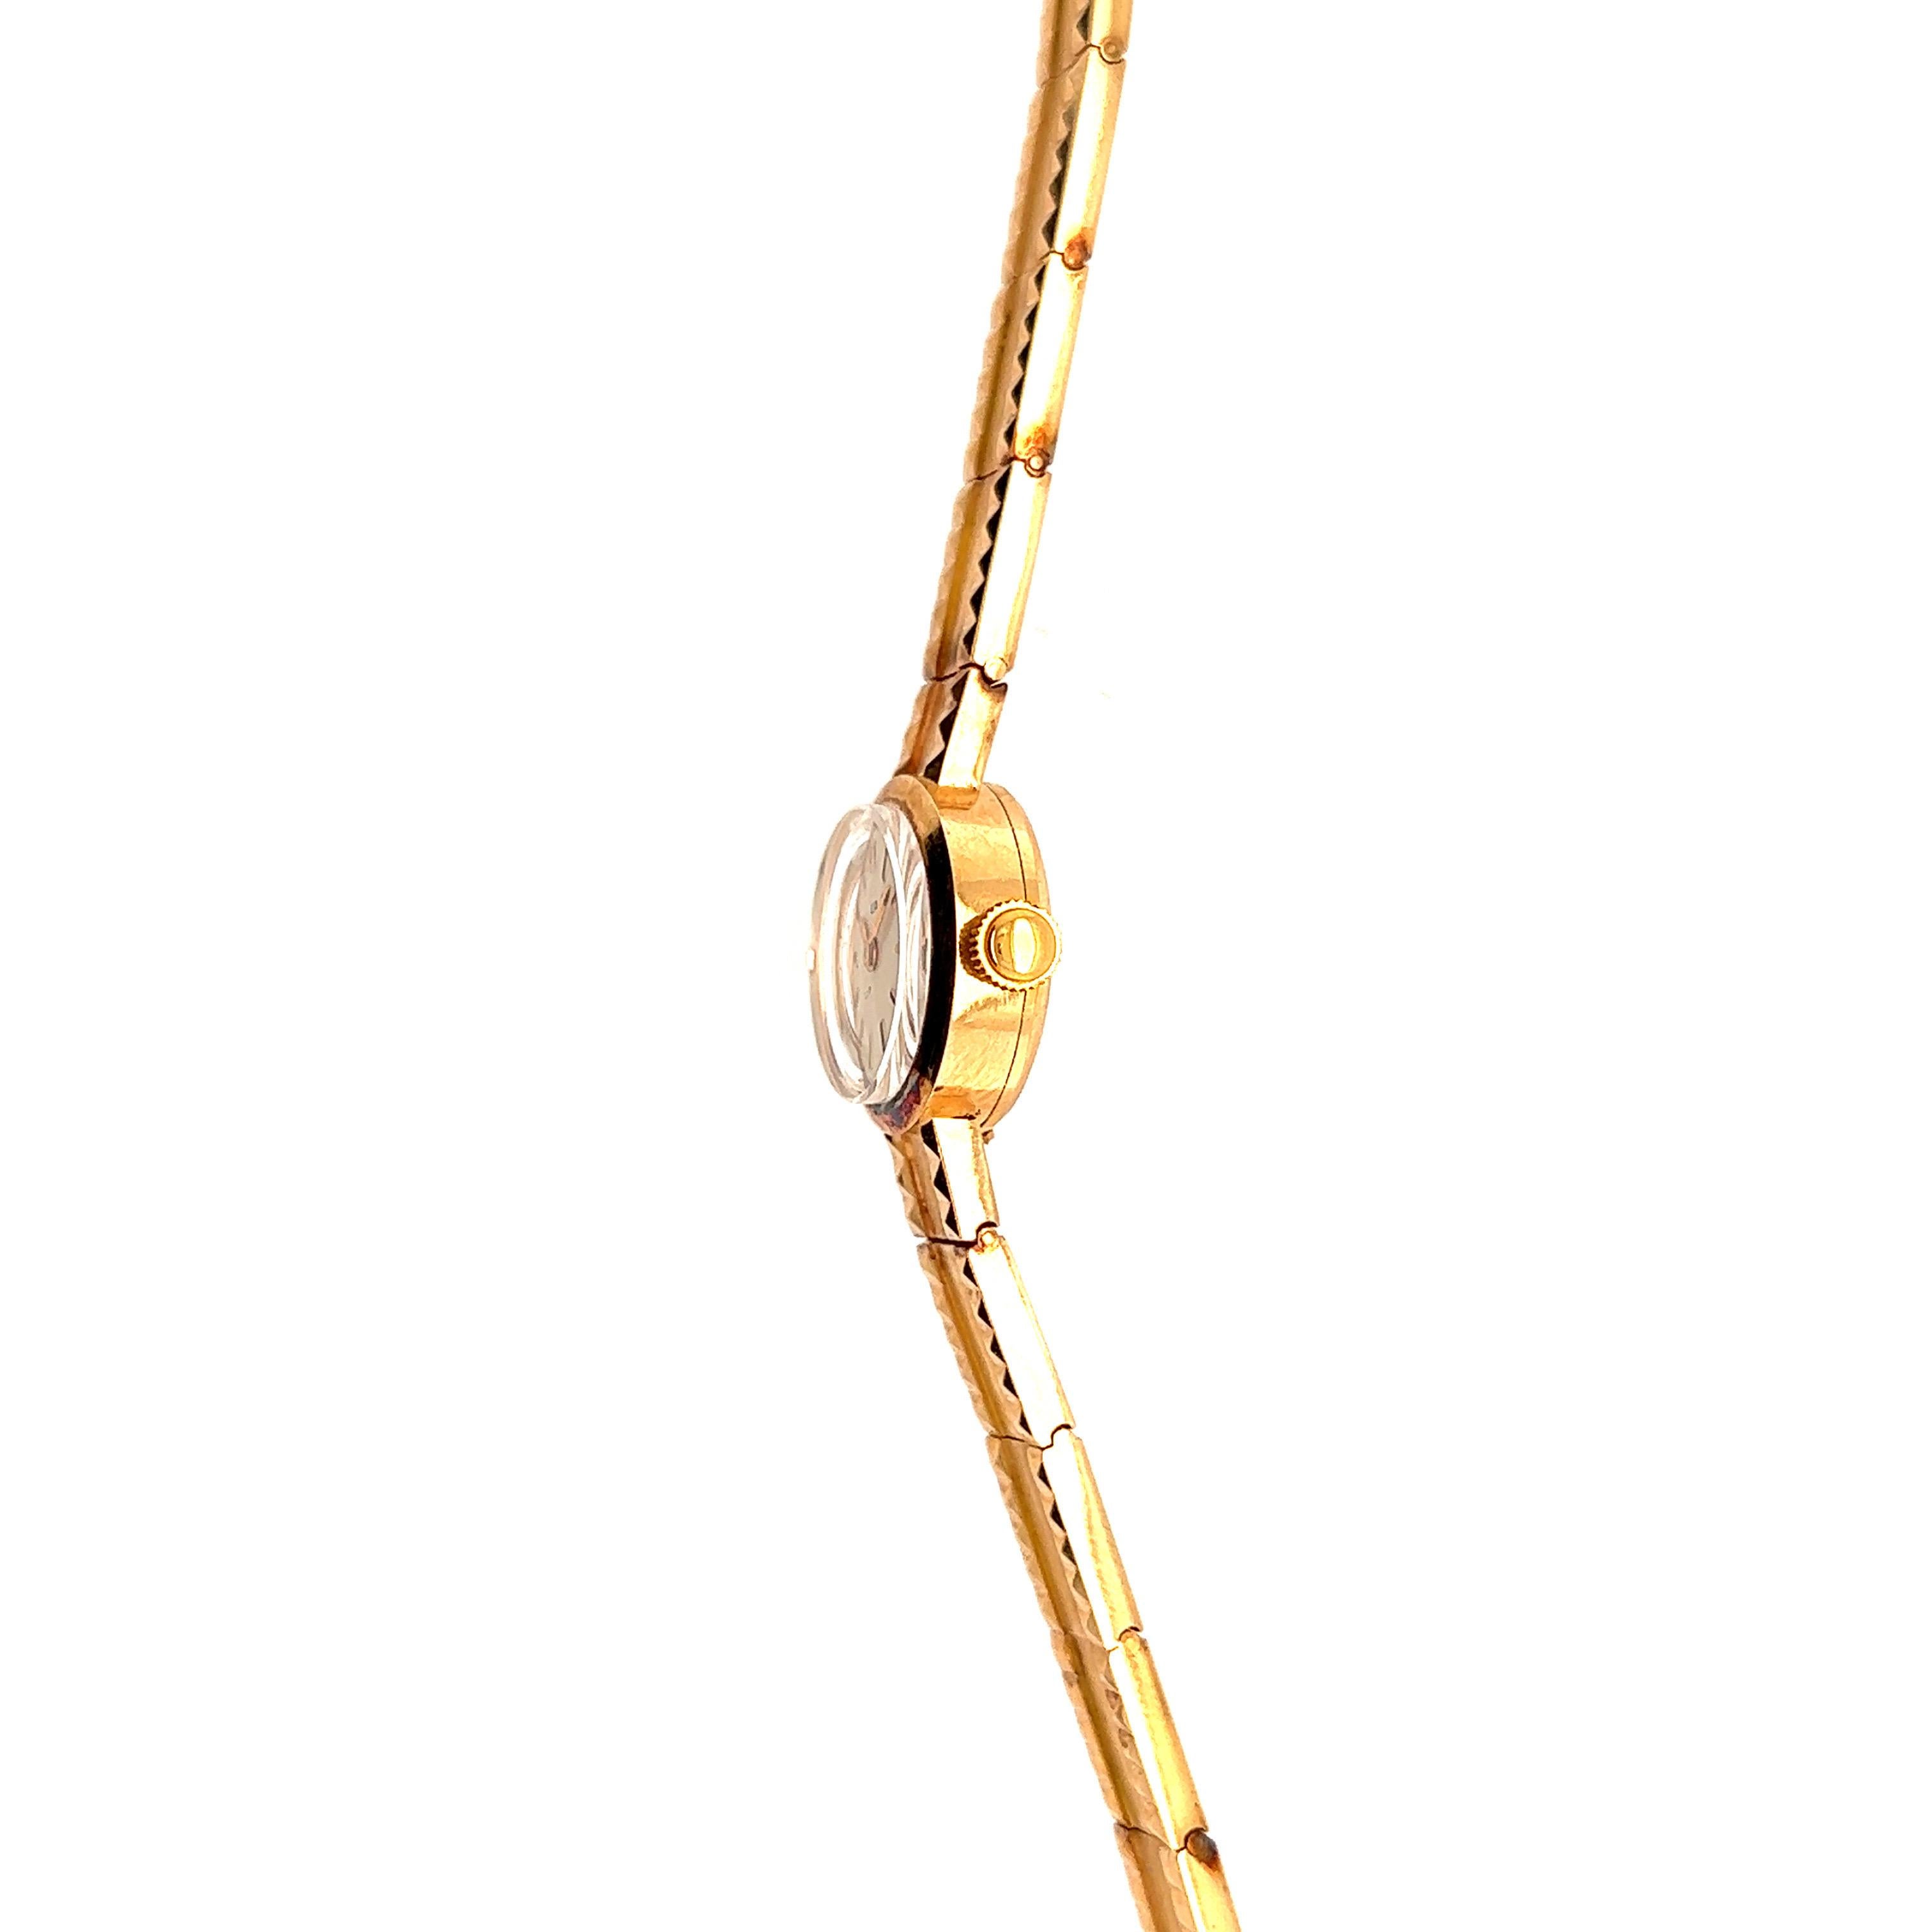 Fabriquée avec soin, cette montre LIP allie l'élégance classique au charme intemporel. Cette montre bracelet vintage est un véritable bijou en or jaune 18 carats. L'or jaune, avec sa teinte chaude et rayonnante, confère à cette montre un aspect à la